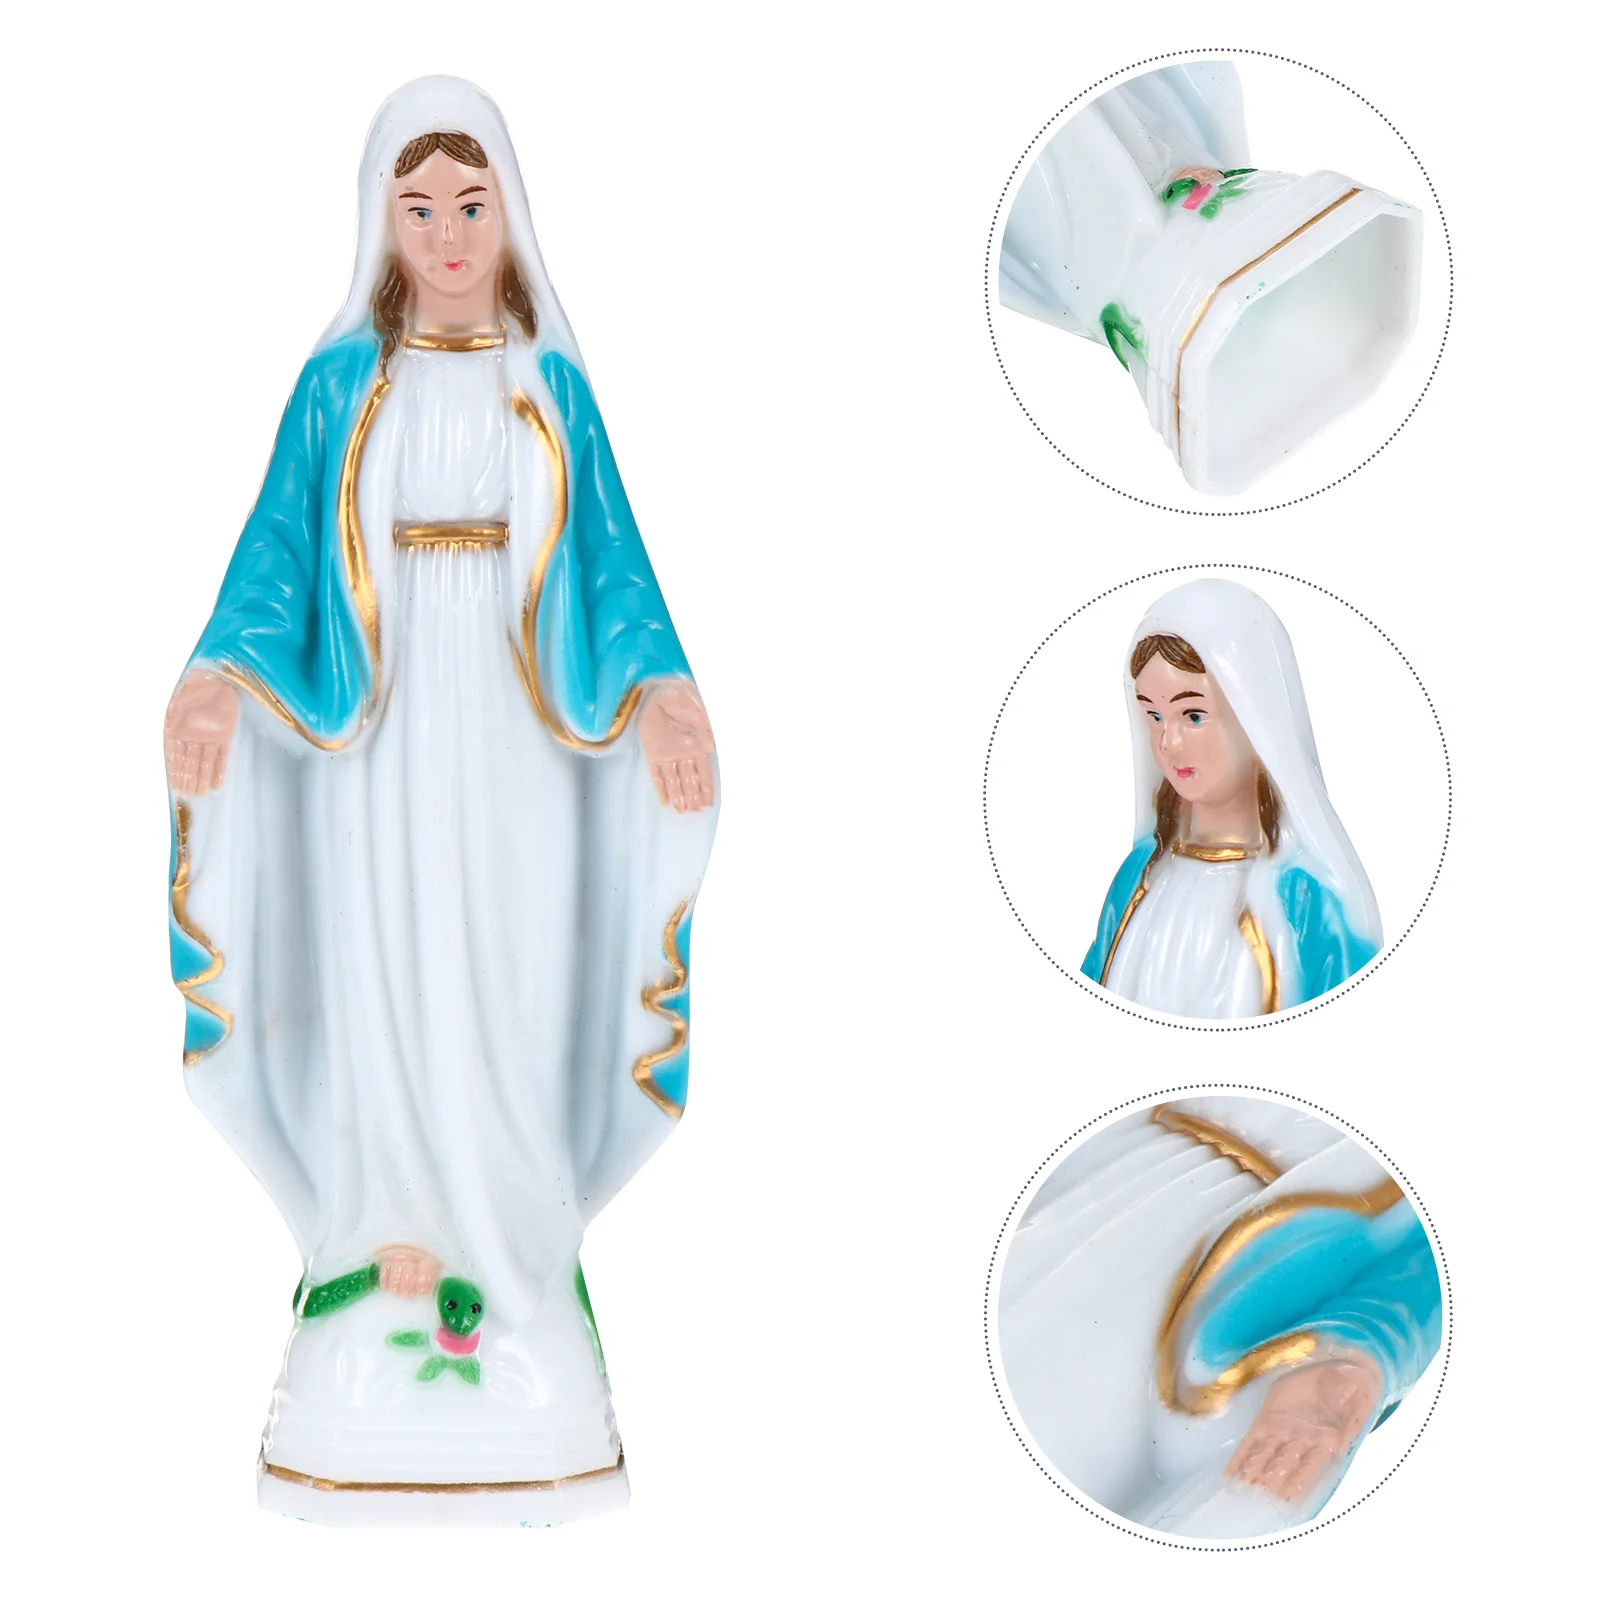 

Статуя mary, статуя католической Марии, религиозная фигурка, статуя католической Марии, ремесла, скульптура для скетчинга, практики, художника